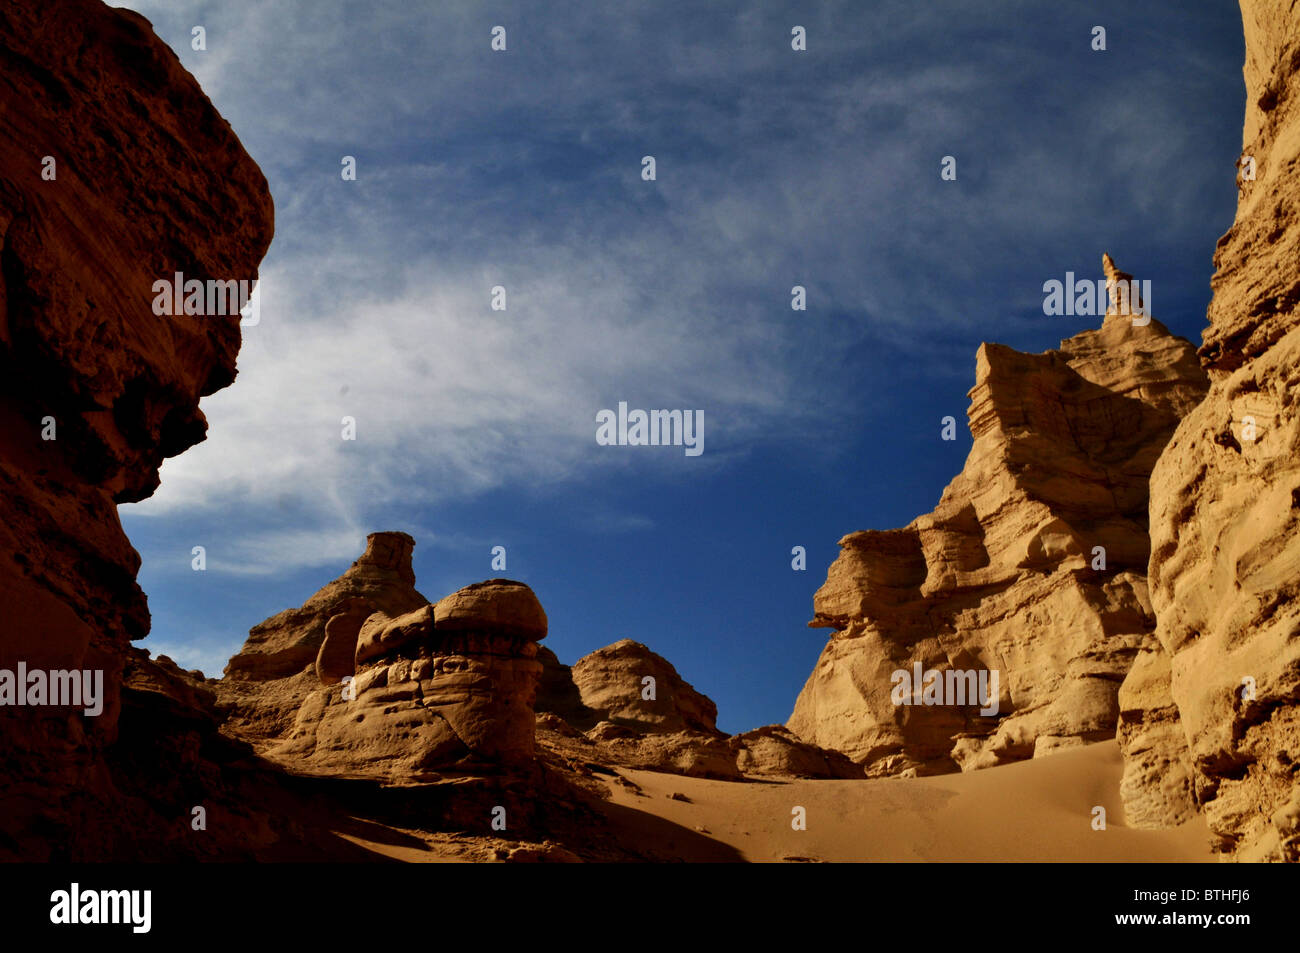 Los hermosos paisajes del desierto de Gobi. Foto de stock